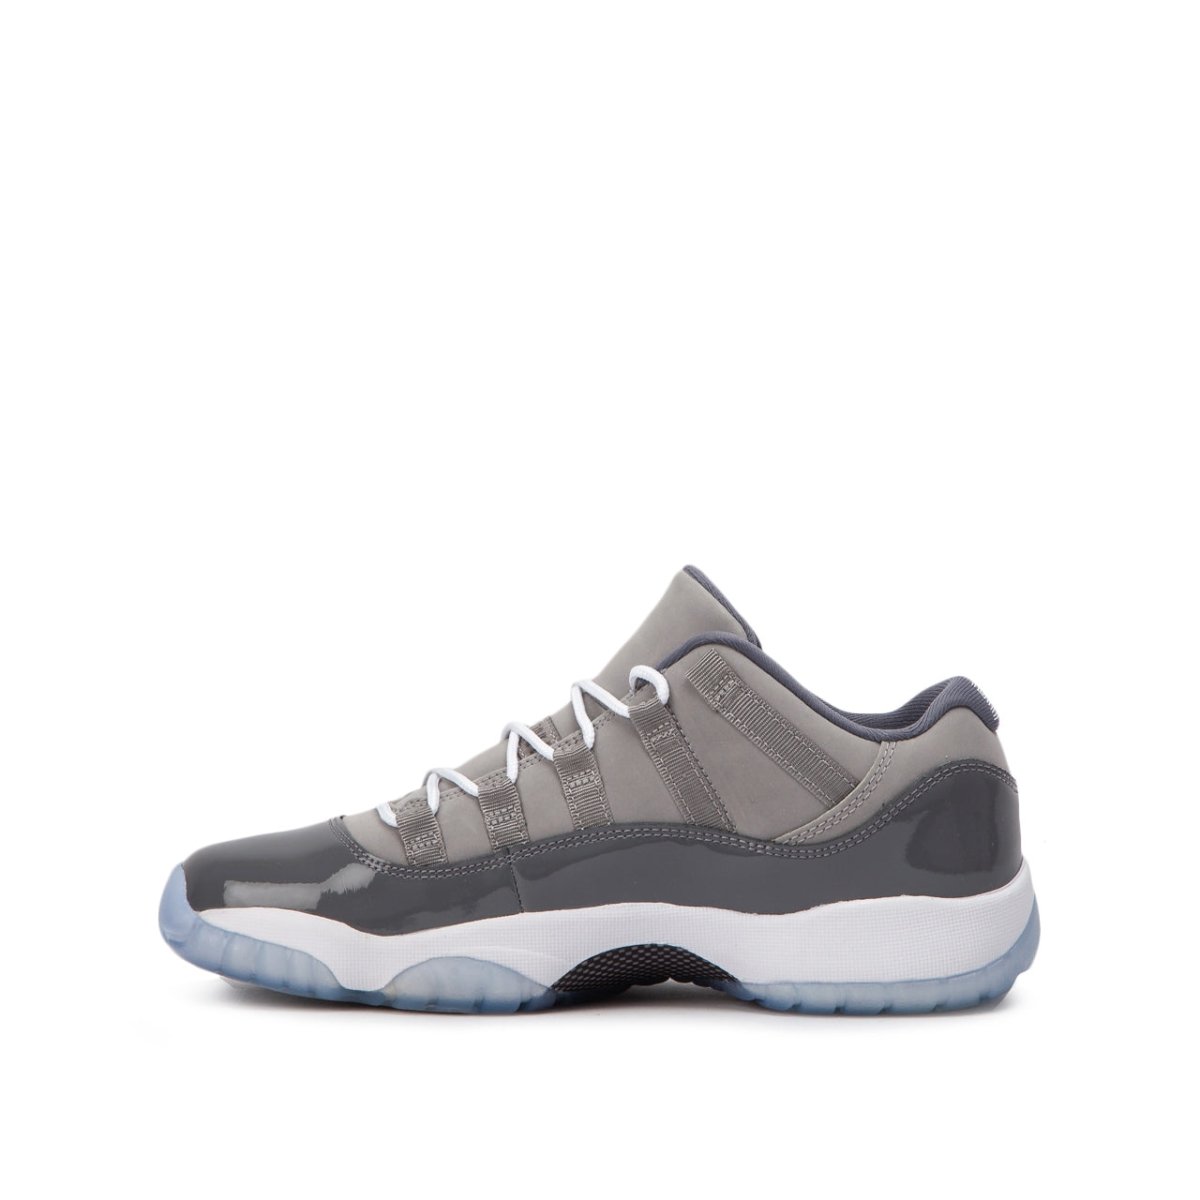 Nike Air Jordan XI Retro Low GS 'Cool Grey' (Grau)  - Allike Store